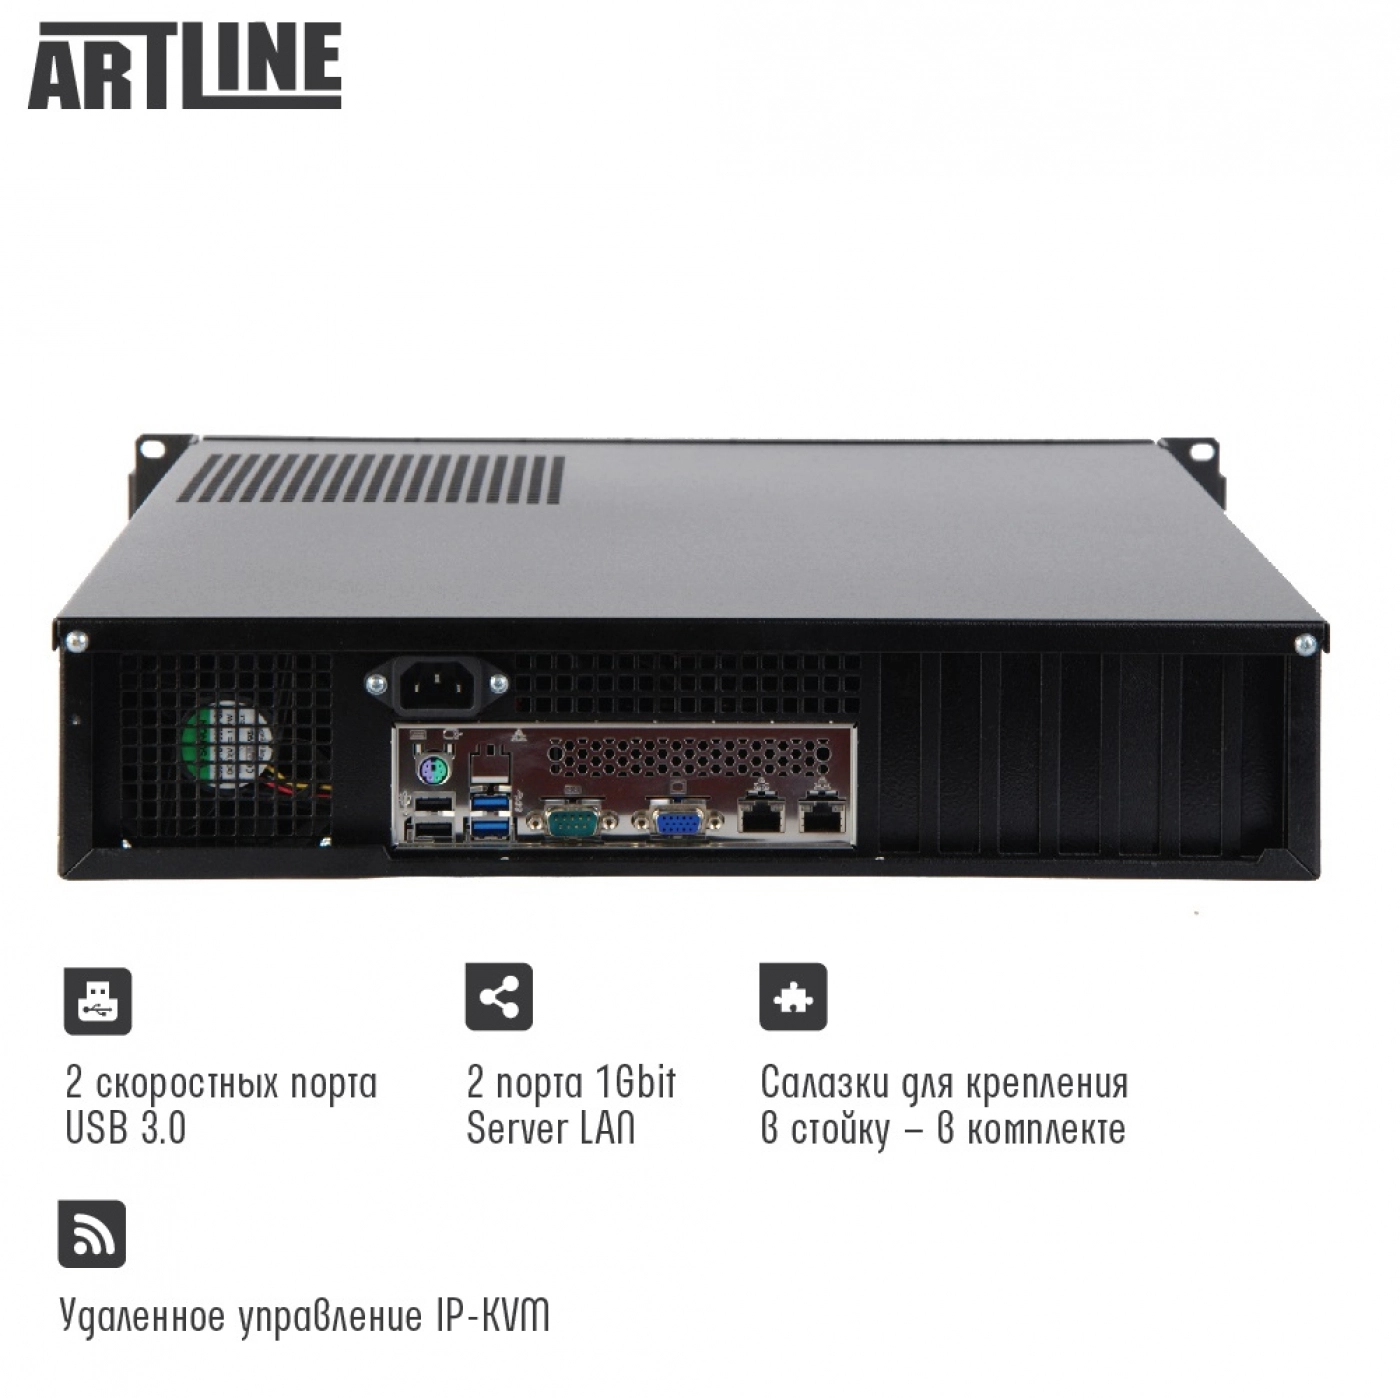 Купить Сервер ARTLINE Business R77v10 - фото 3